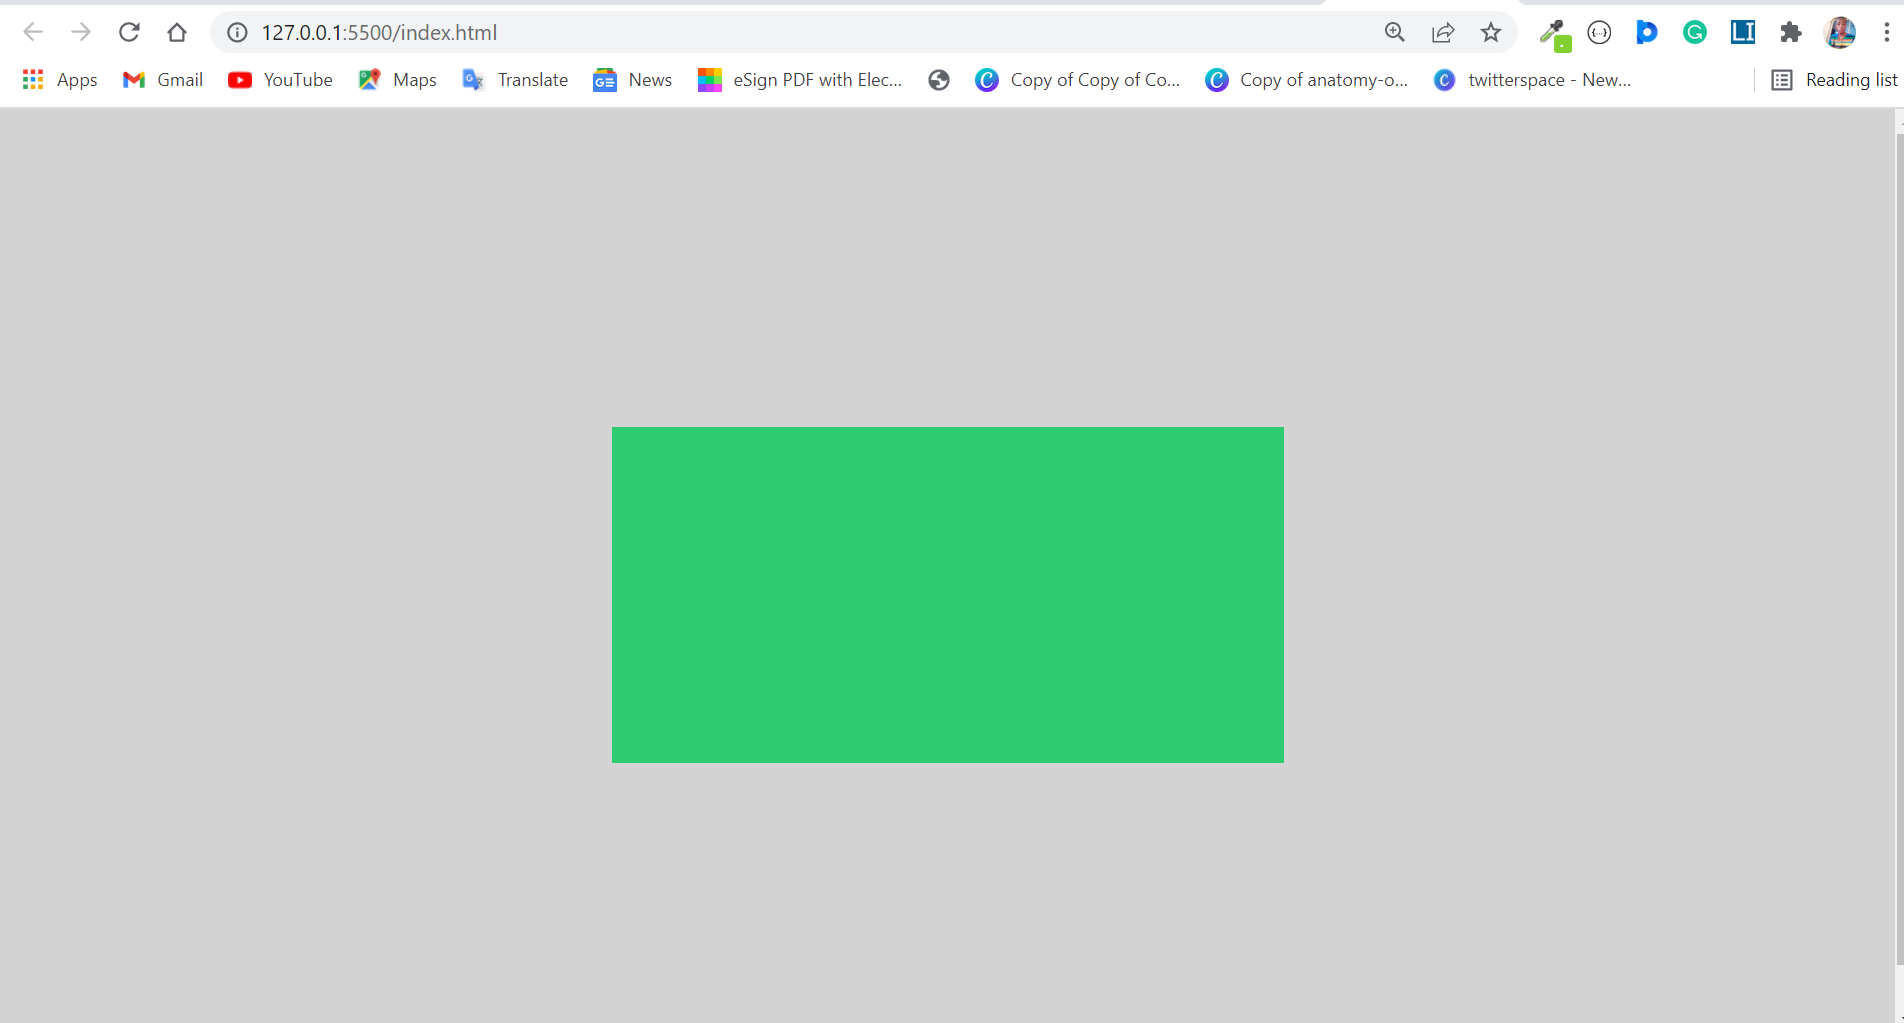 Màu nền trong CSS là một trong những yếu tố quan trọng để thiết kế website thật đẹp mắt và chuyên nghiệp. Hãy khám phá ngay hình ảnh liên quan đến chủ đề màu nền trong CSS để tìm hiểu thêm về cách sử dụng màu sắc hiệu quả để tạo nên giao diện tuyệt đẹp cho trang web của bạn.